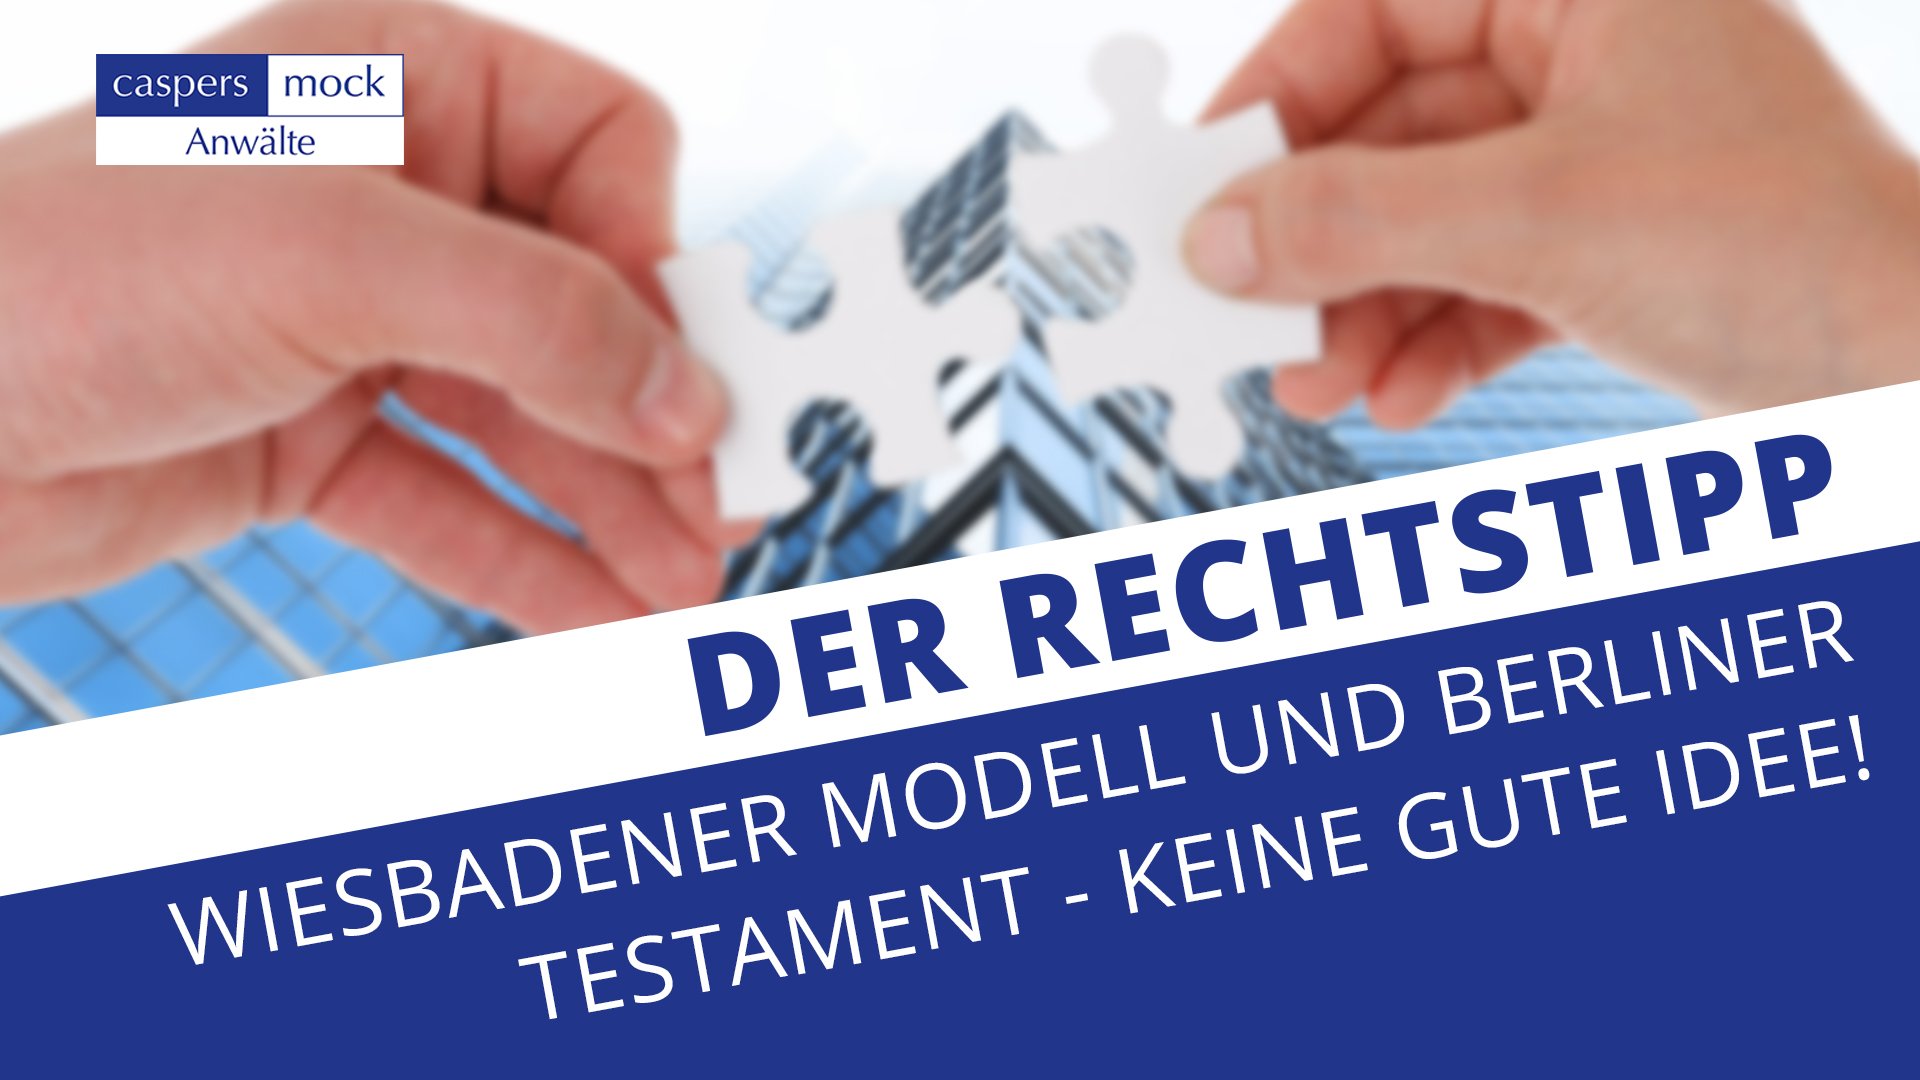 Wiesbadener Modell und Berliner Testament - Keine gute Idee!